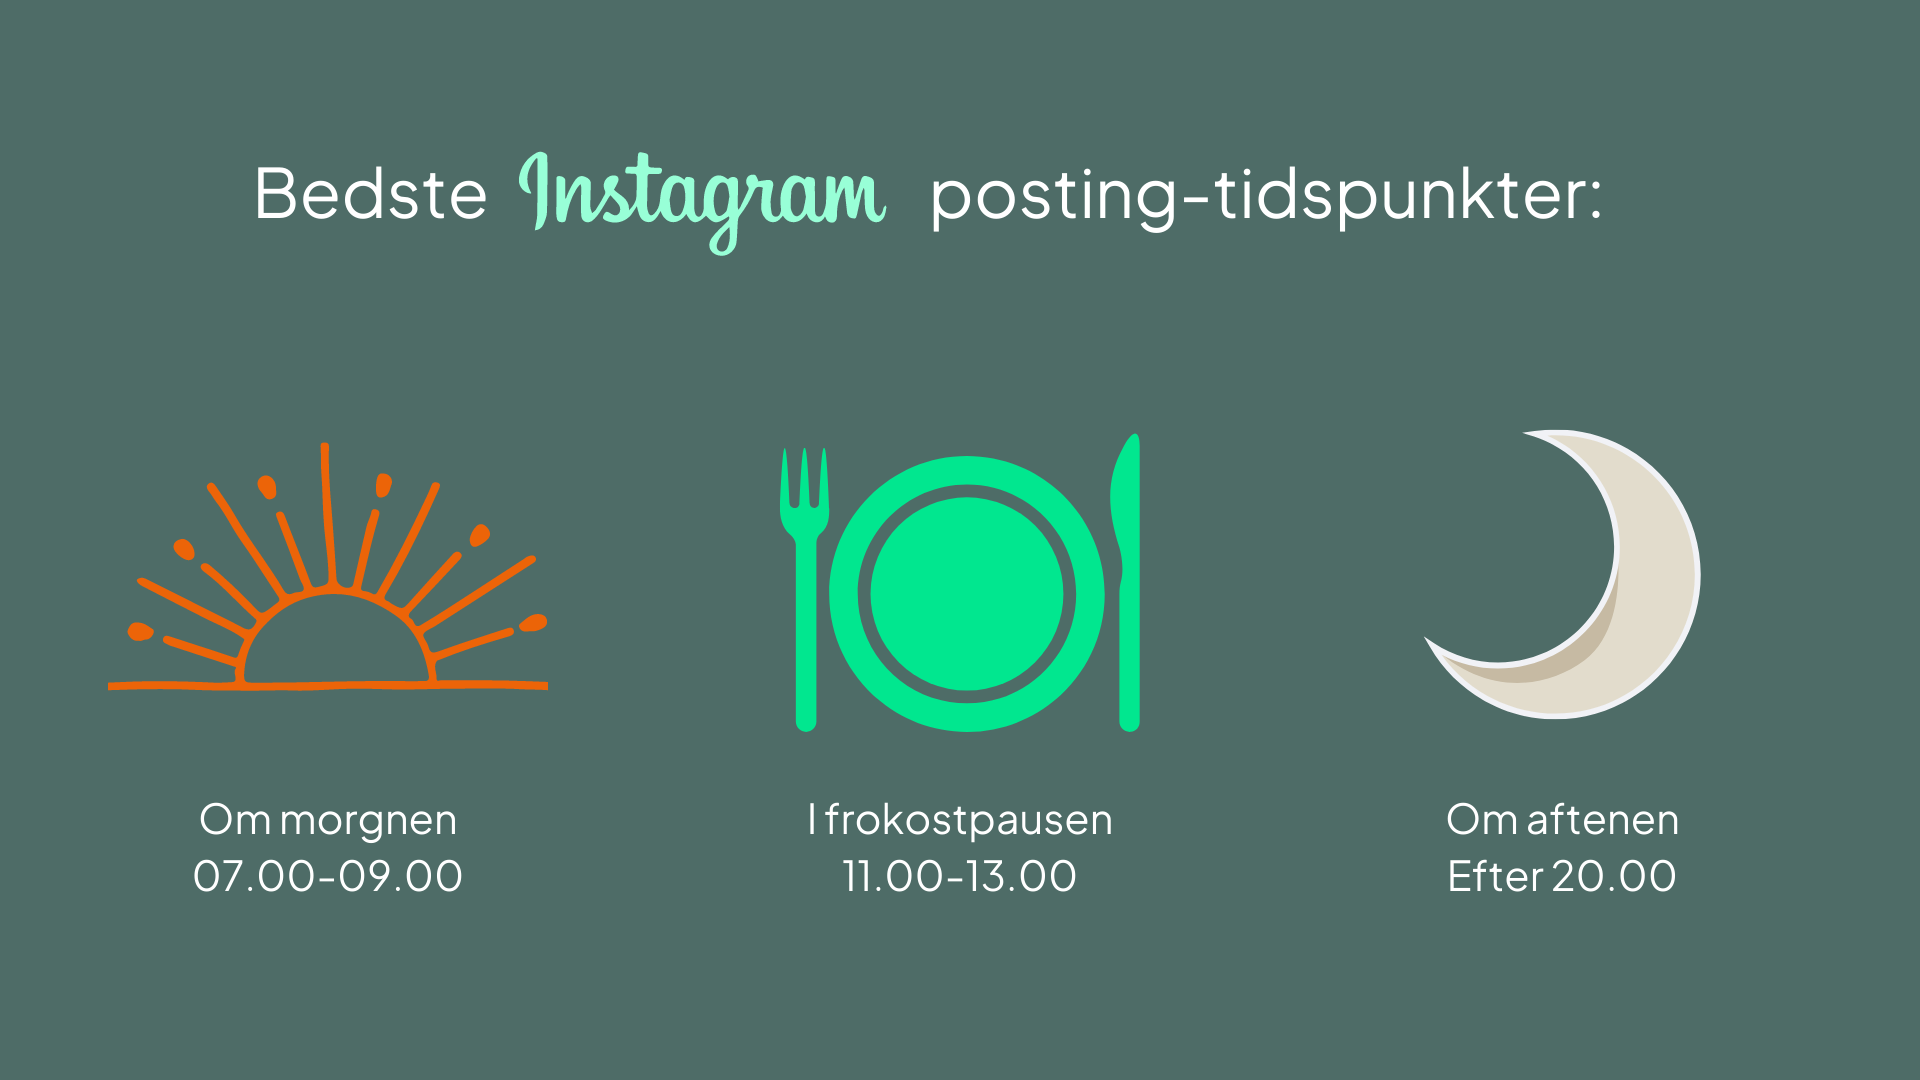 Morgen, middag og aften er dér, hvor flest er online - og derfor det bedste tidspunkt at poste på Instagram